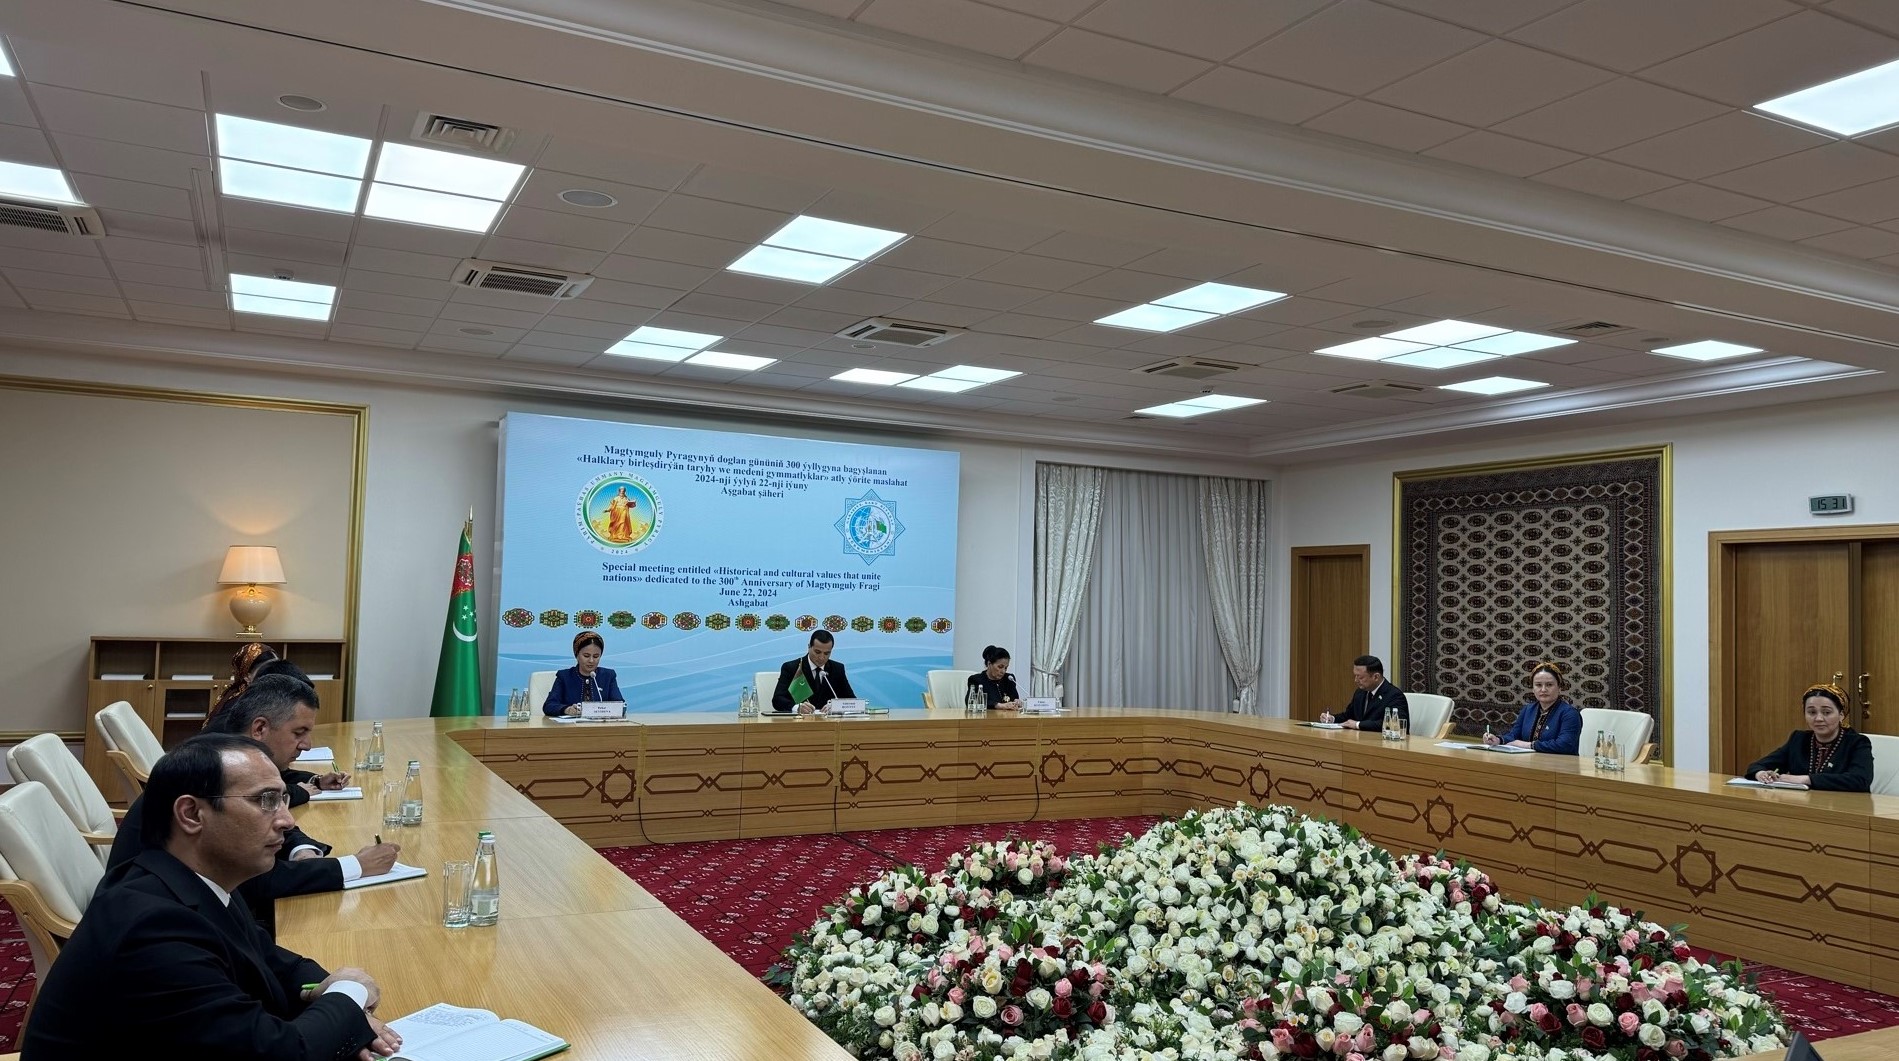 В Меджлисе Туркменистана проведено специальное заседание «исторические и культурные ценности, объединяющие народы», посвящённое 300-летию со дня рождения Махтумкули Фраги